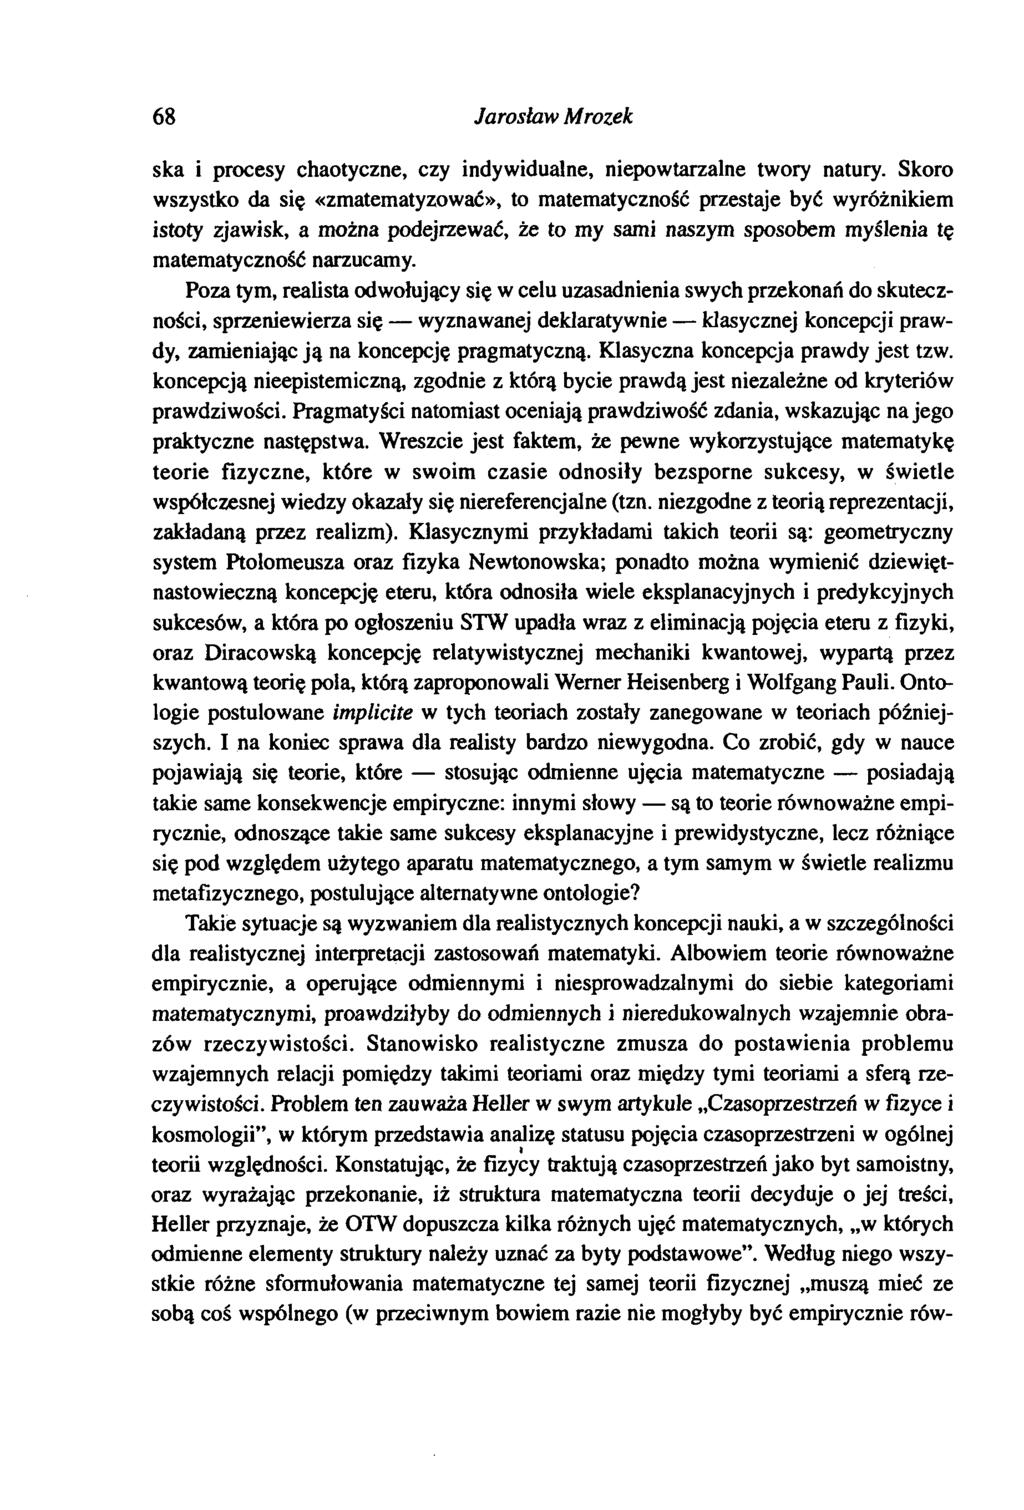 68 Jarosław Mrozek ska i procesy chaotyczne, czy indywidualne, niepowtarzalne twory natury.